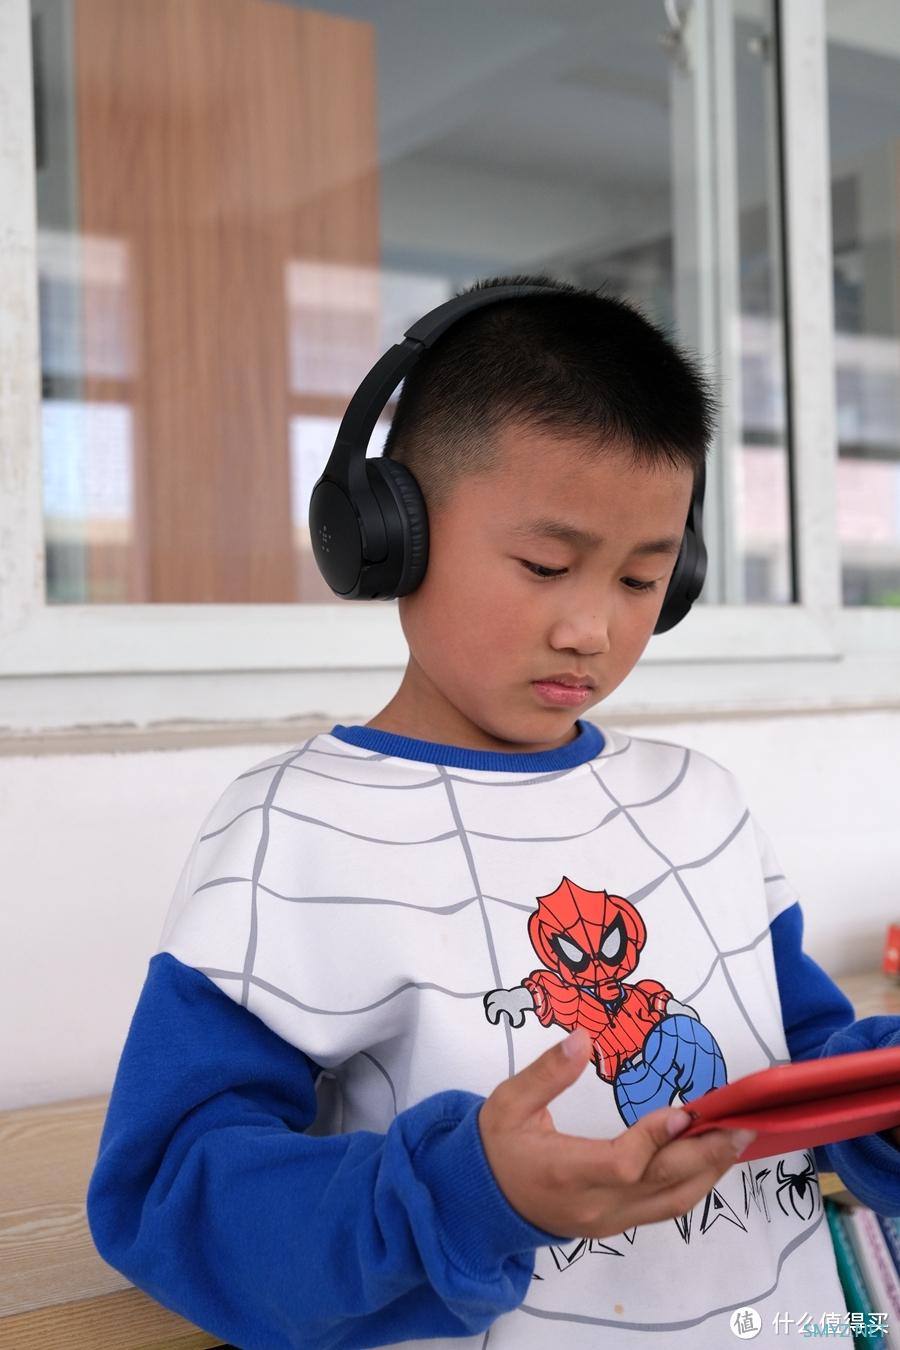 用专业去保护孩子的听力，贝尔金BELKIN儿童蓝牙耳机评测